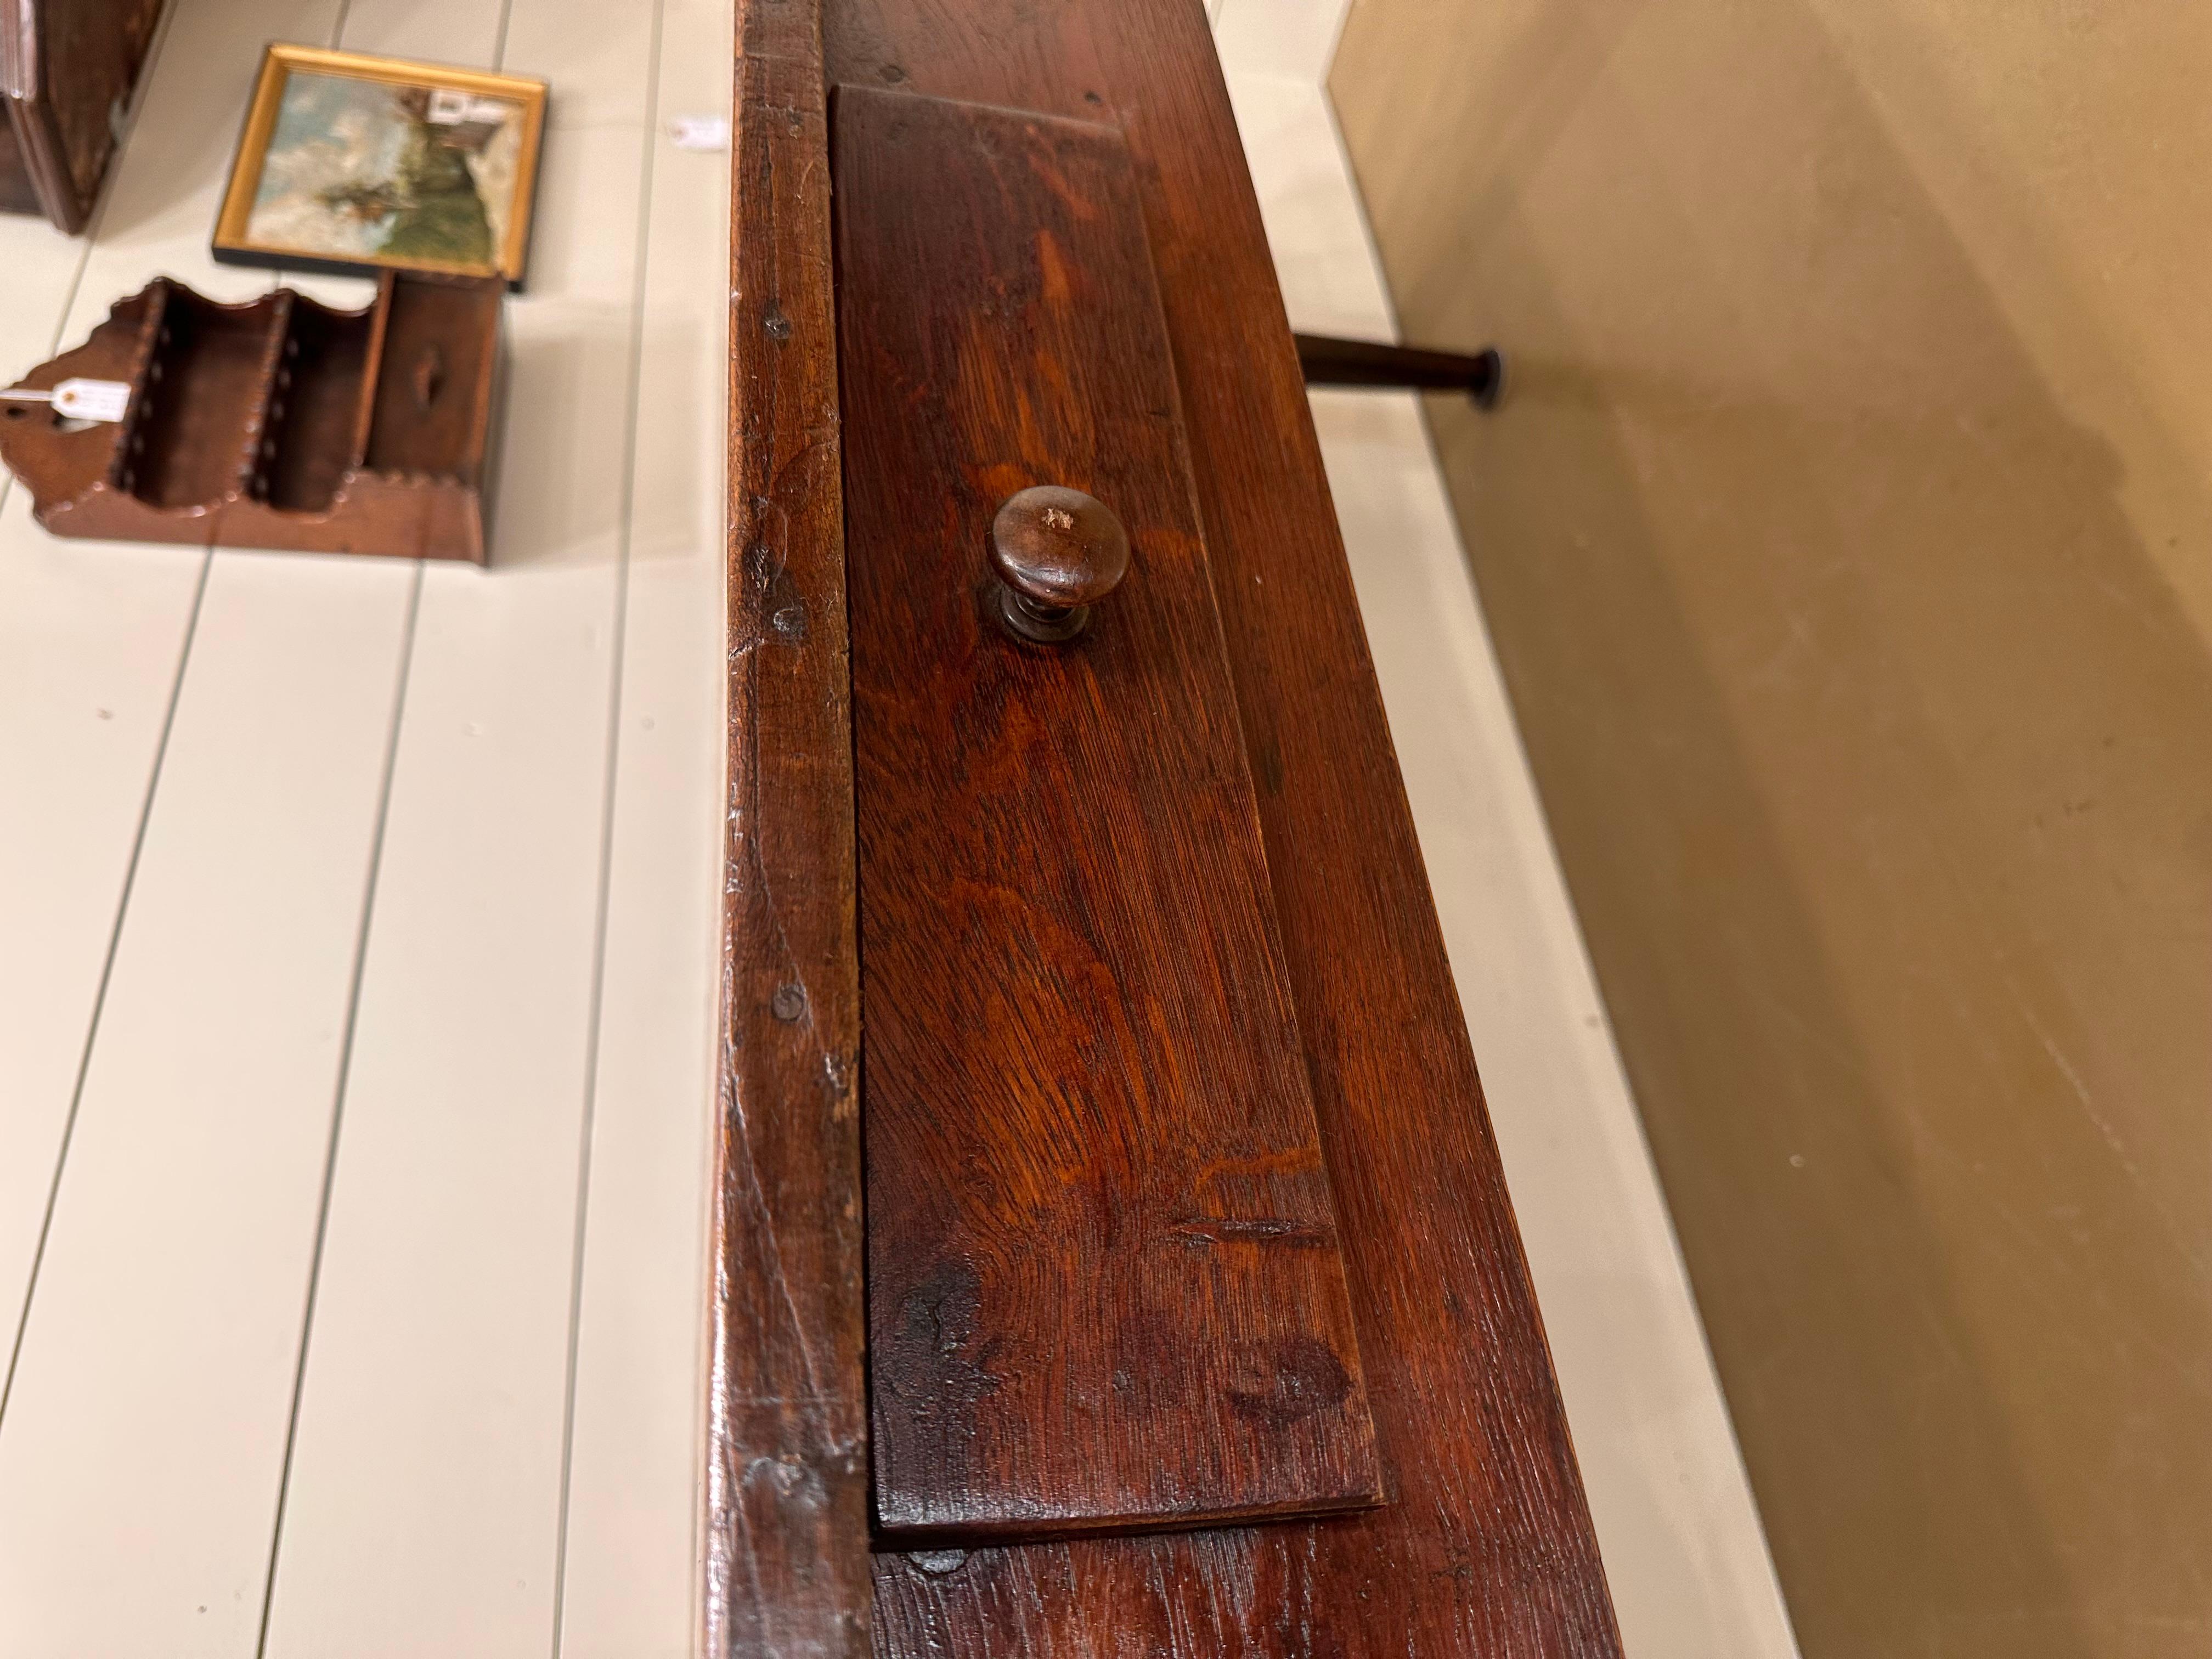 Ce bureau anglais du XIXe siècle avec tiroir est un mélange captivant d'histoire et de fonctionnalité. Fabriqué avec une élégance intemporelle, le bois riche et l'artisanat exquis en font un ajout unique à tout espace. L'ajout d'un tiroir pratique